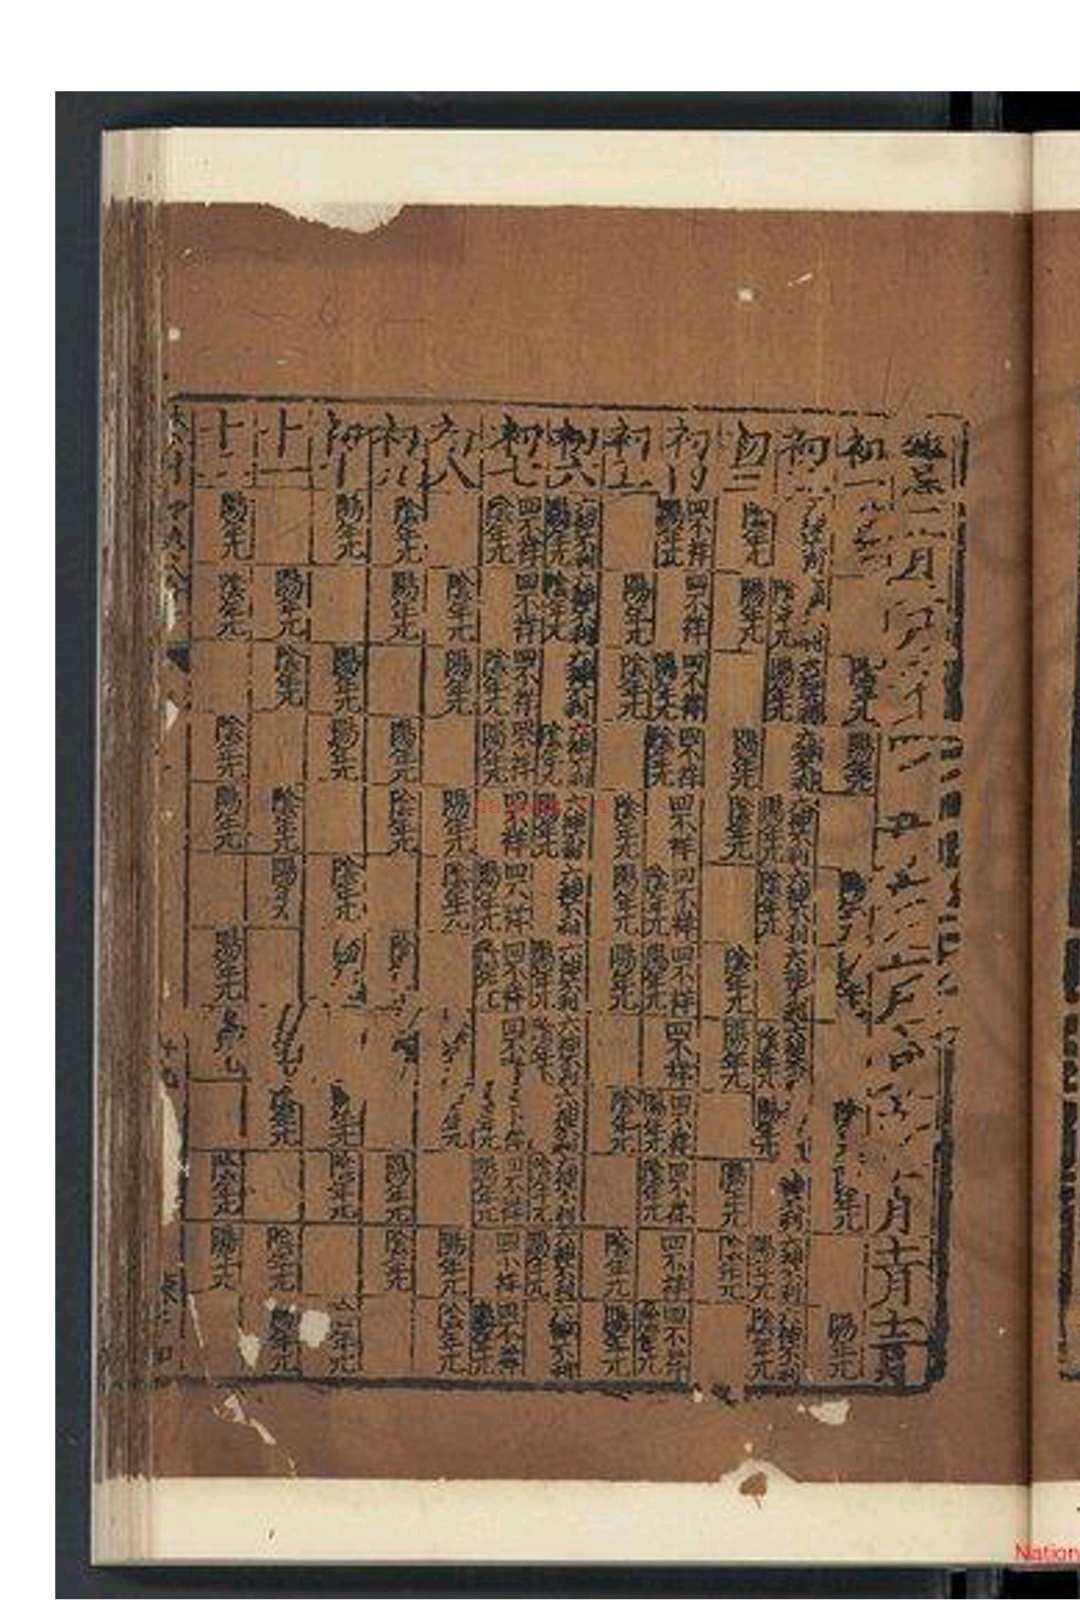 捐吉成书 元前至元十八年(1281)刊本